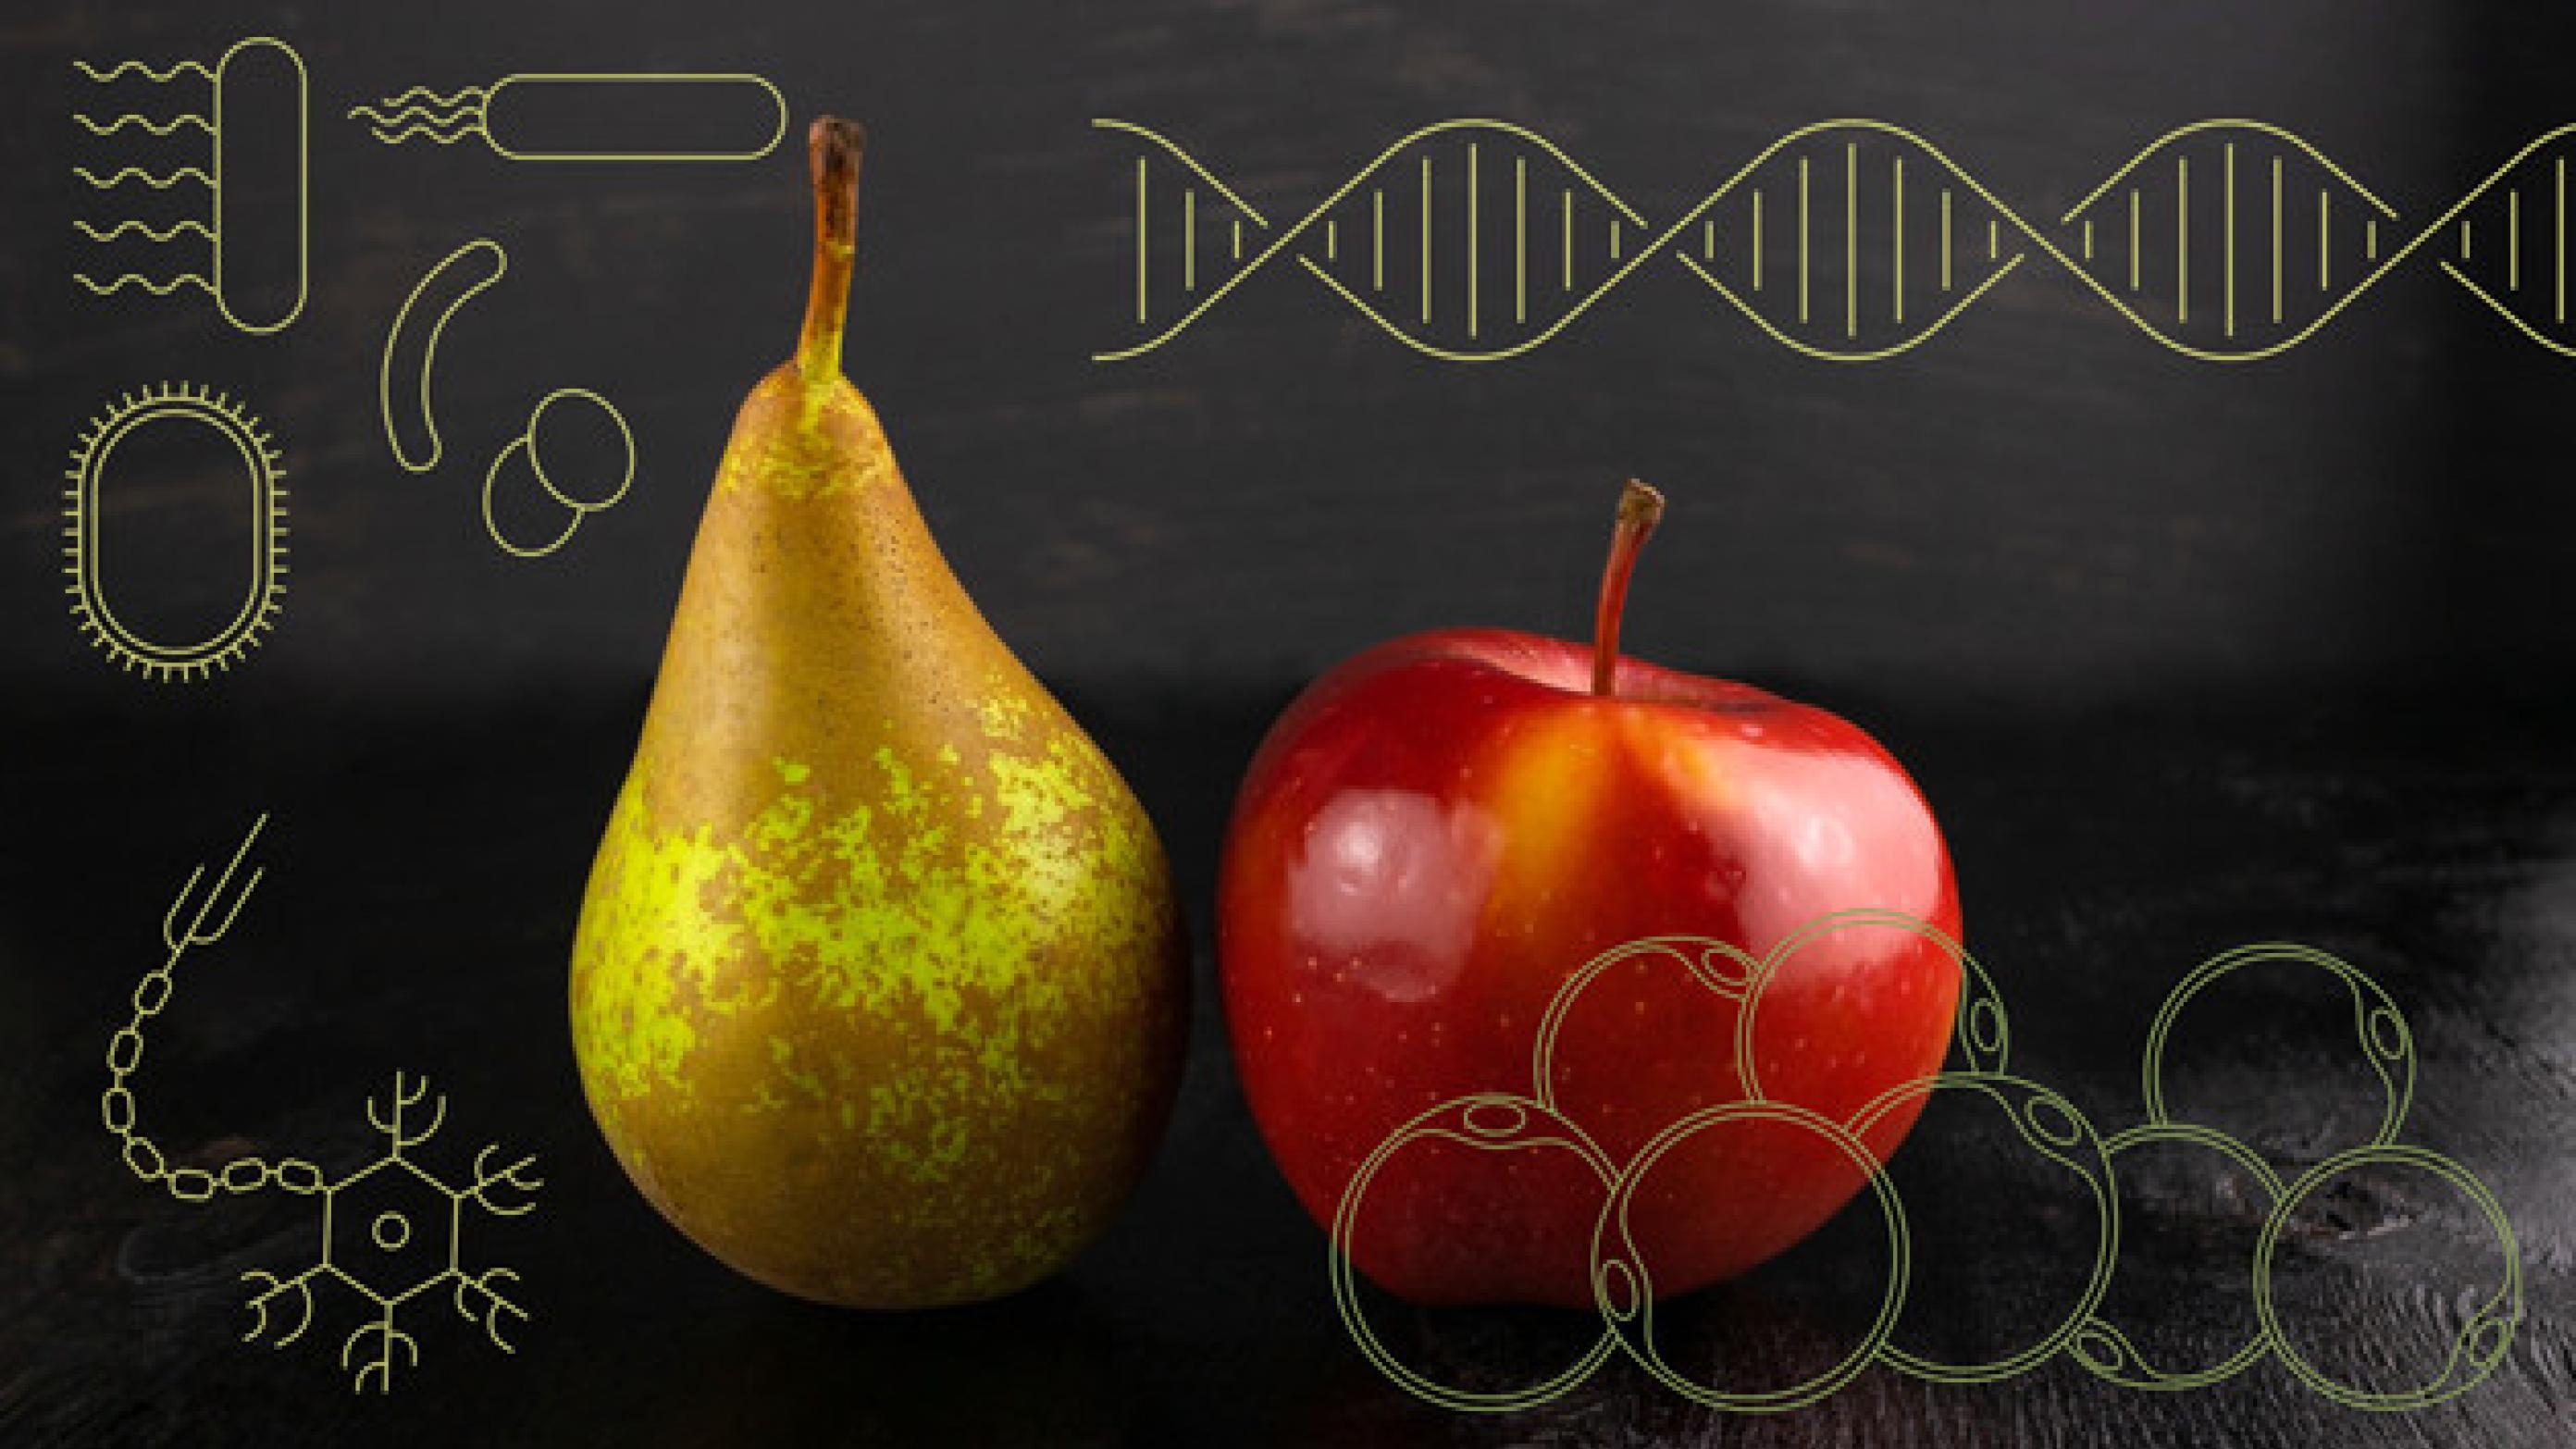 Æblefacon og pærefacon. Hvidt fedt og brunt fedt. Mikrober, neuroner og hormoner. Utroligt mange faktorer spiller ind ved overvægt. (Illustration Creative ZOO).